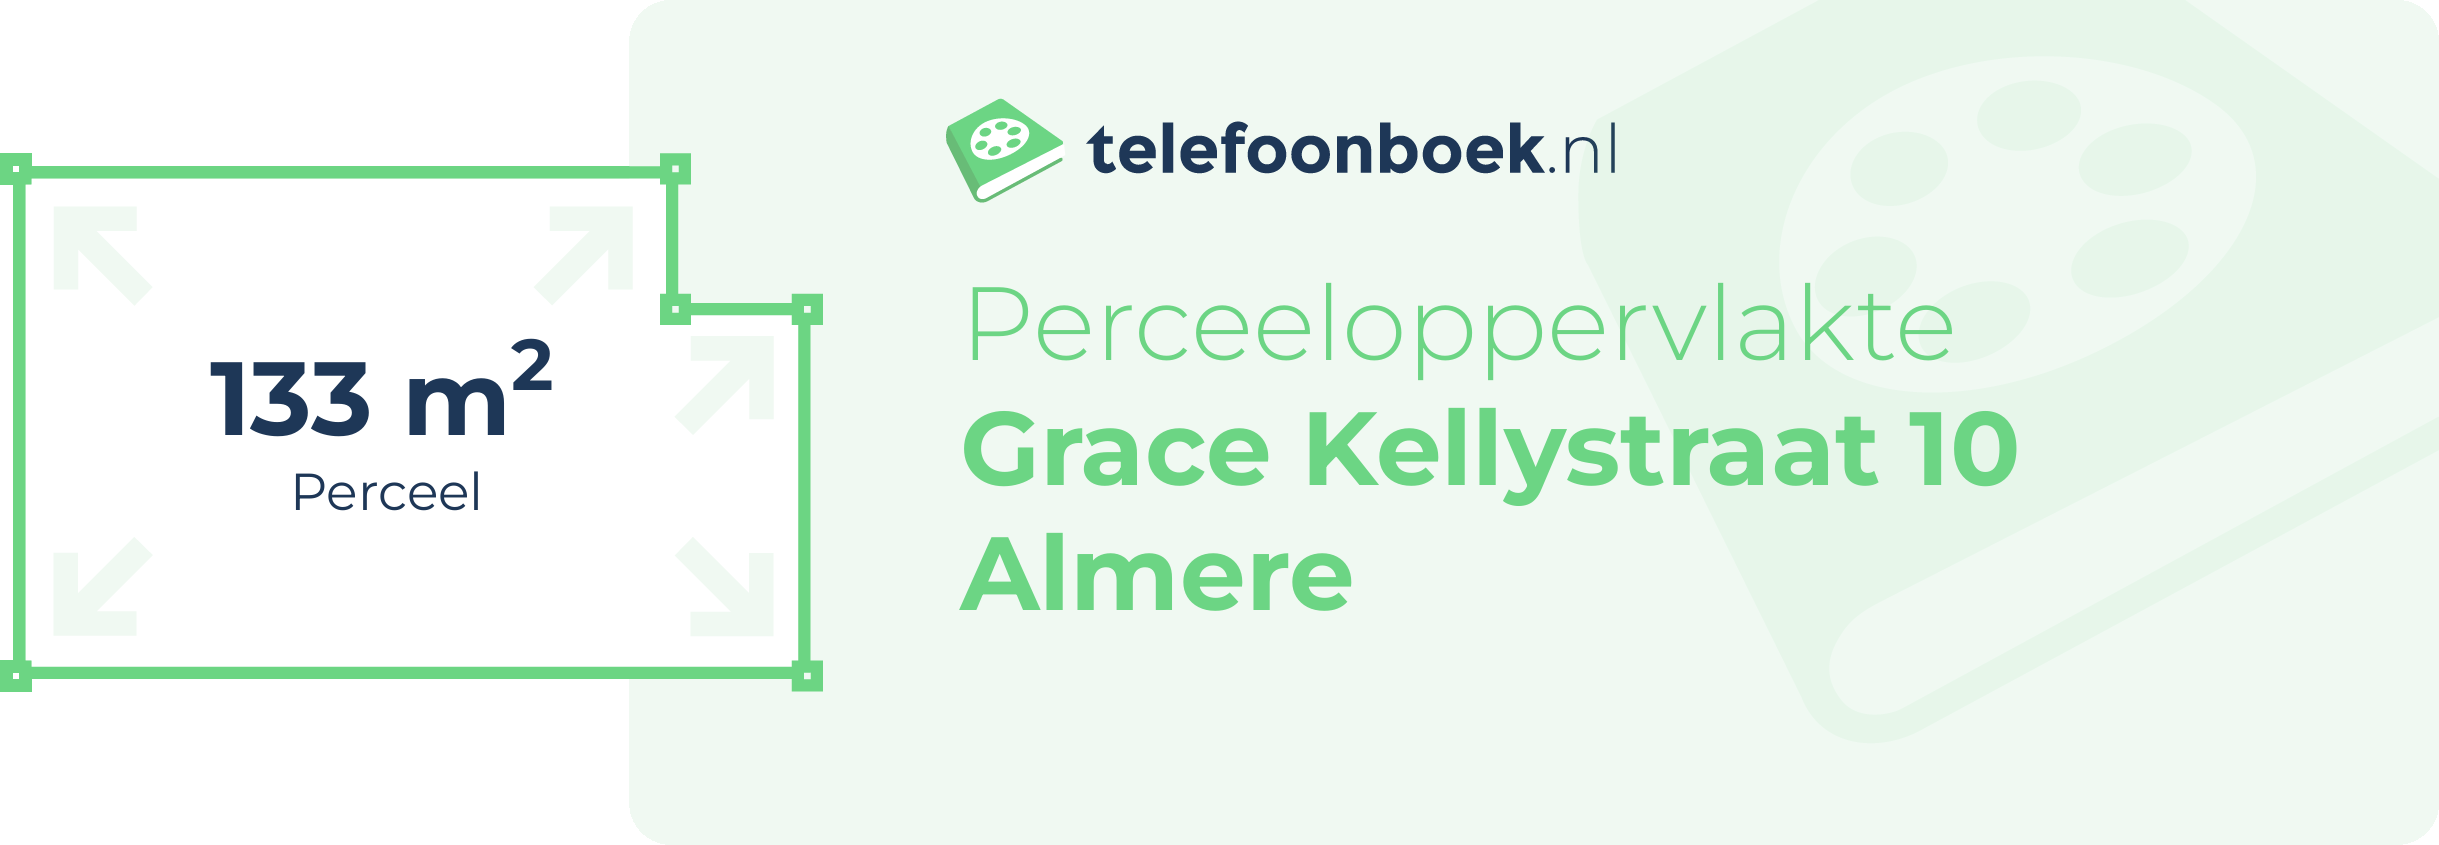 Perceeloppervlakte Grace Kellystraat 10 Almere